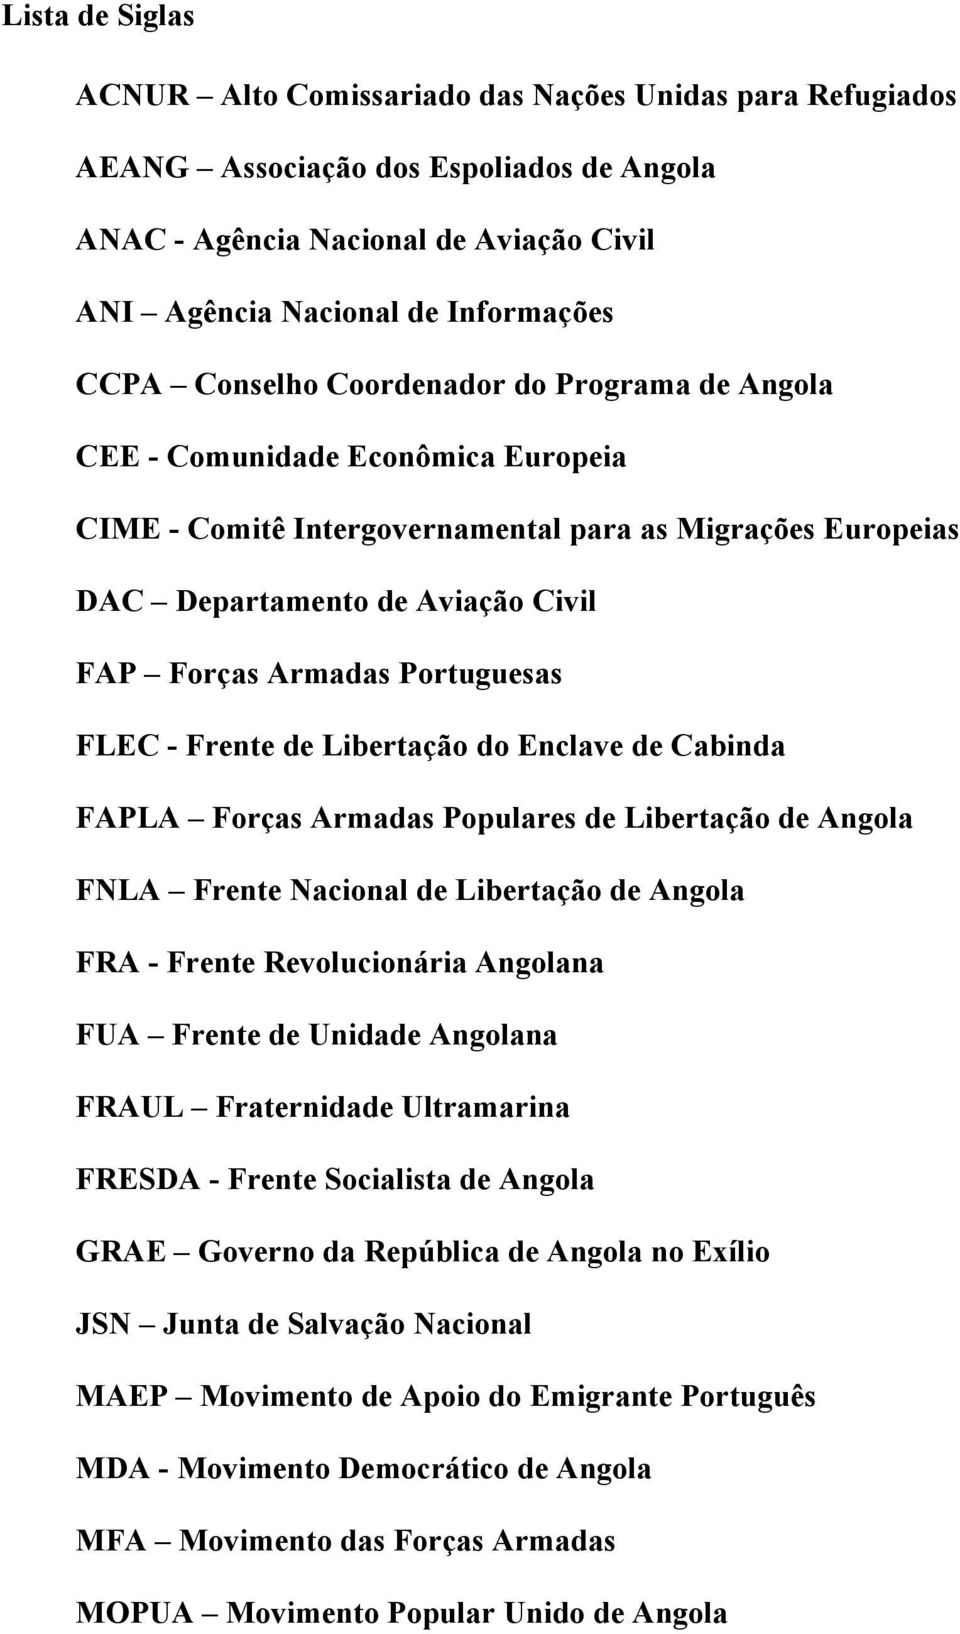 Portuguesas FLEC - Frente de Libertação do Enclave de Cabinda FAPLA Forças Armadas Populares de Libertação de Angola FNLA Frente Nacional de Libertação de Angola FRA - Frente Revolucionária Angolana